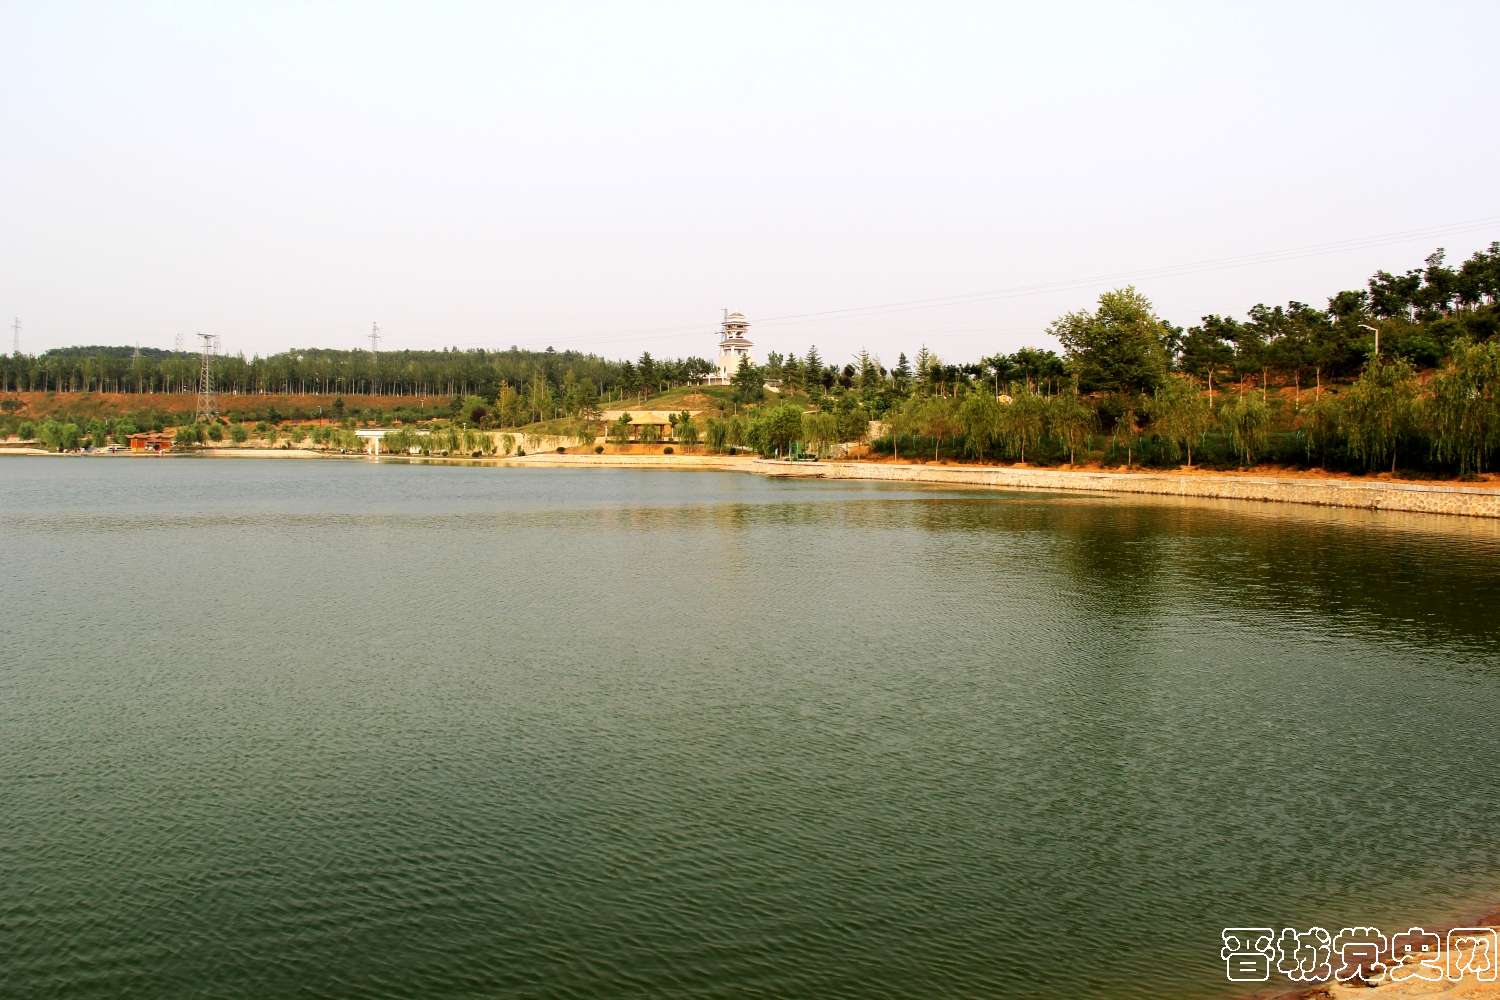 15、人工湖占140多亩，是整个公园最核心的景观。（摄影：韩玉芳）